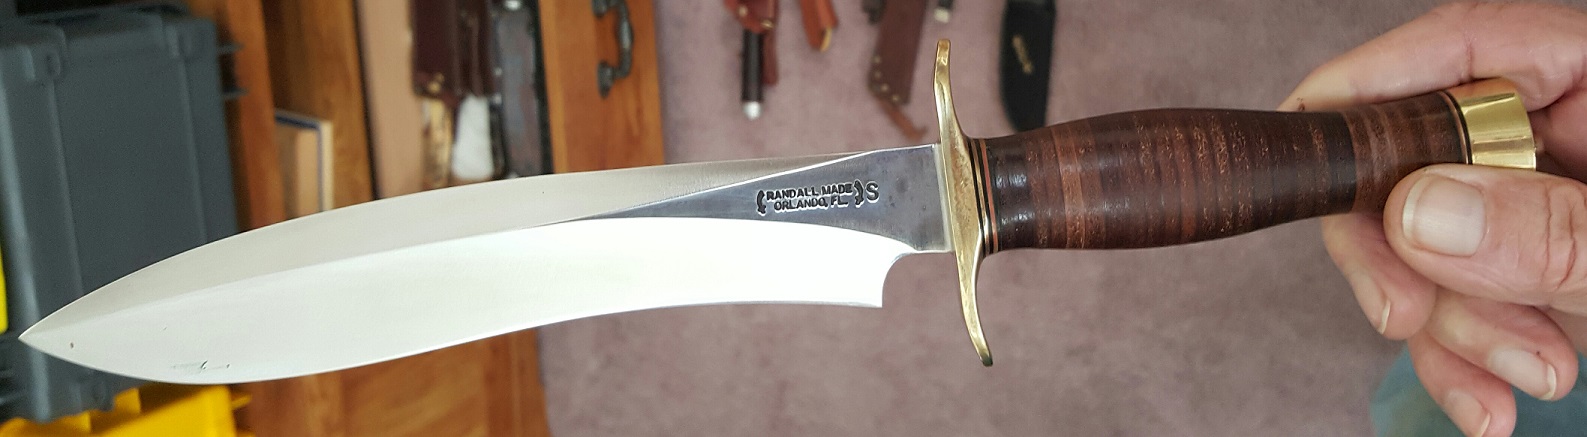 Randall knife.jpg